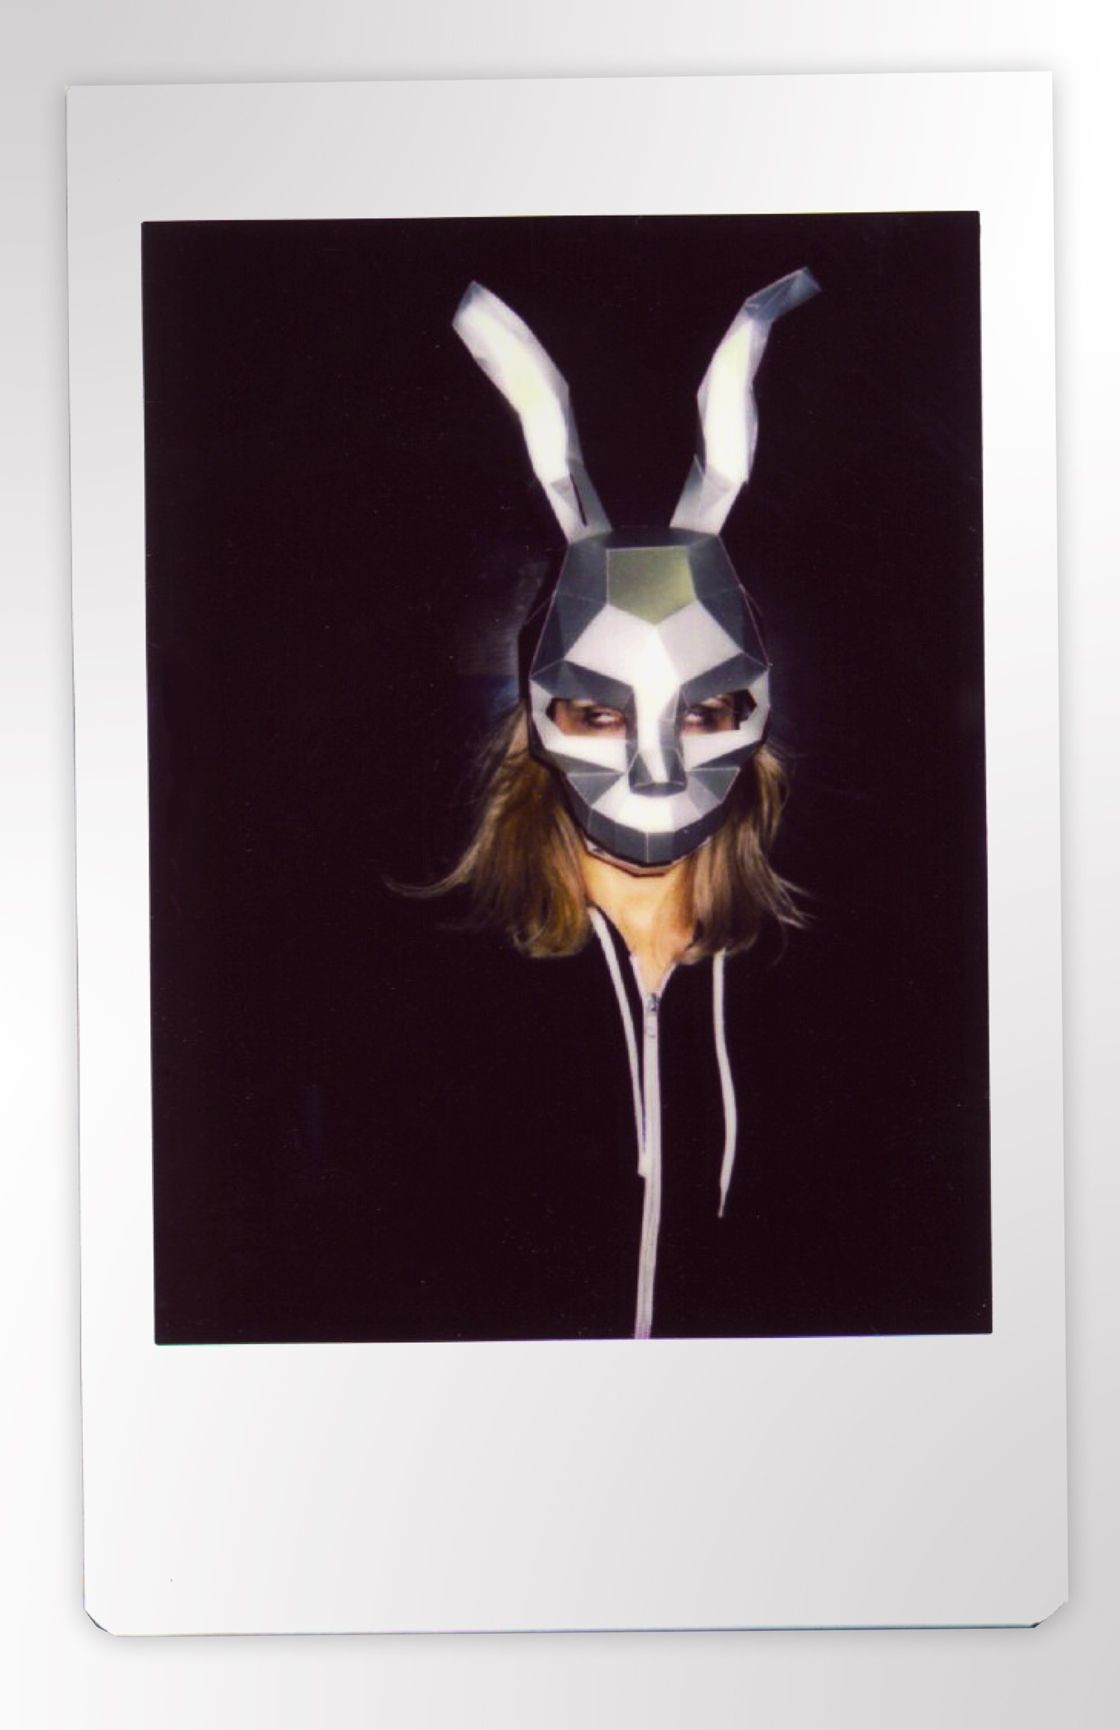 Papercraft Masks Frank Rabbit Mask Donnie Darko Mask Hare Mask Diy 3dmask Pdf Paper